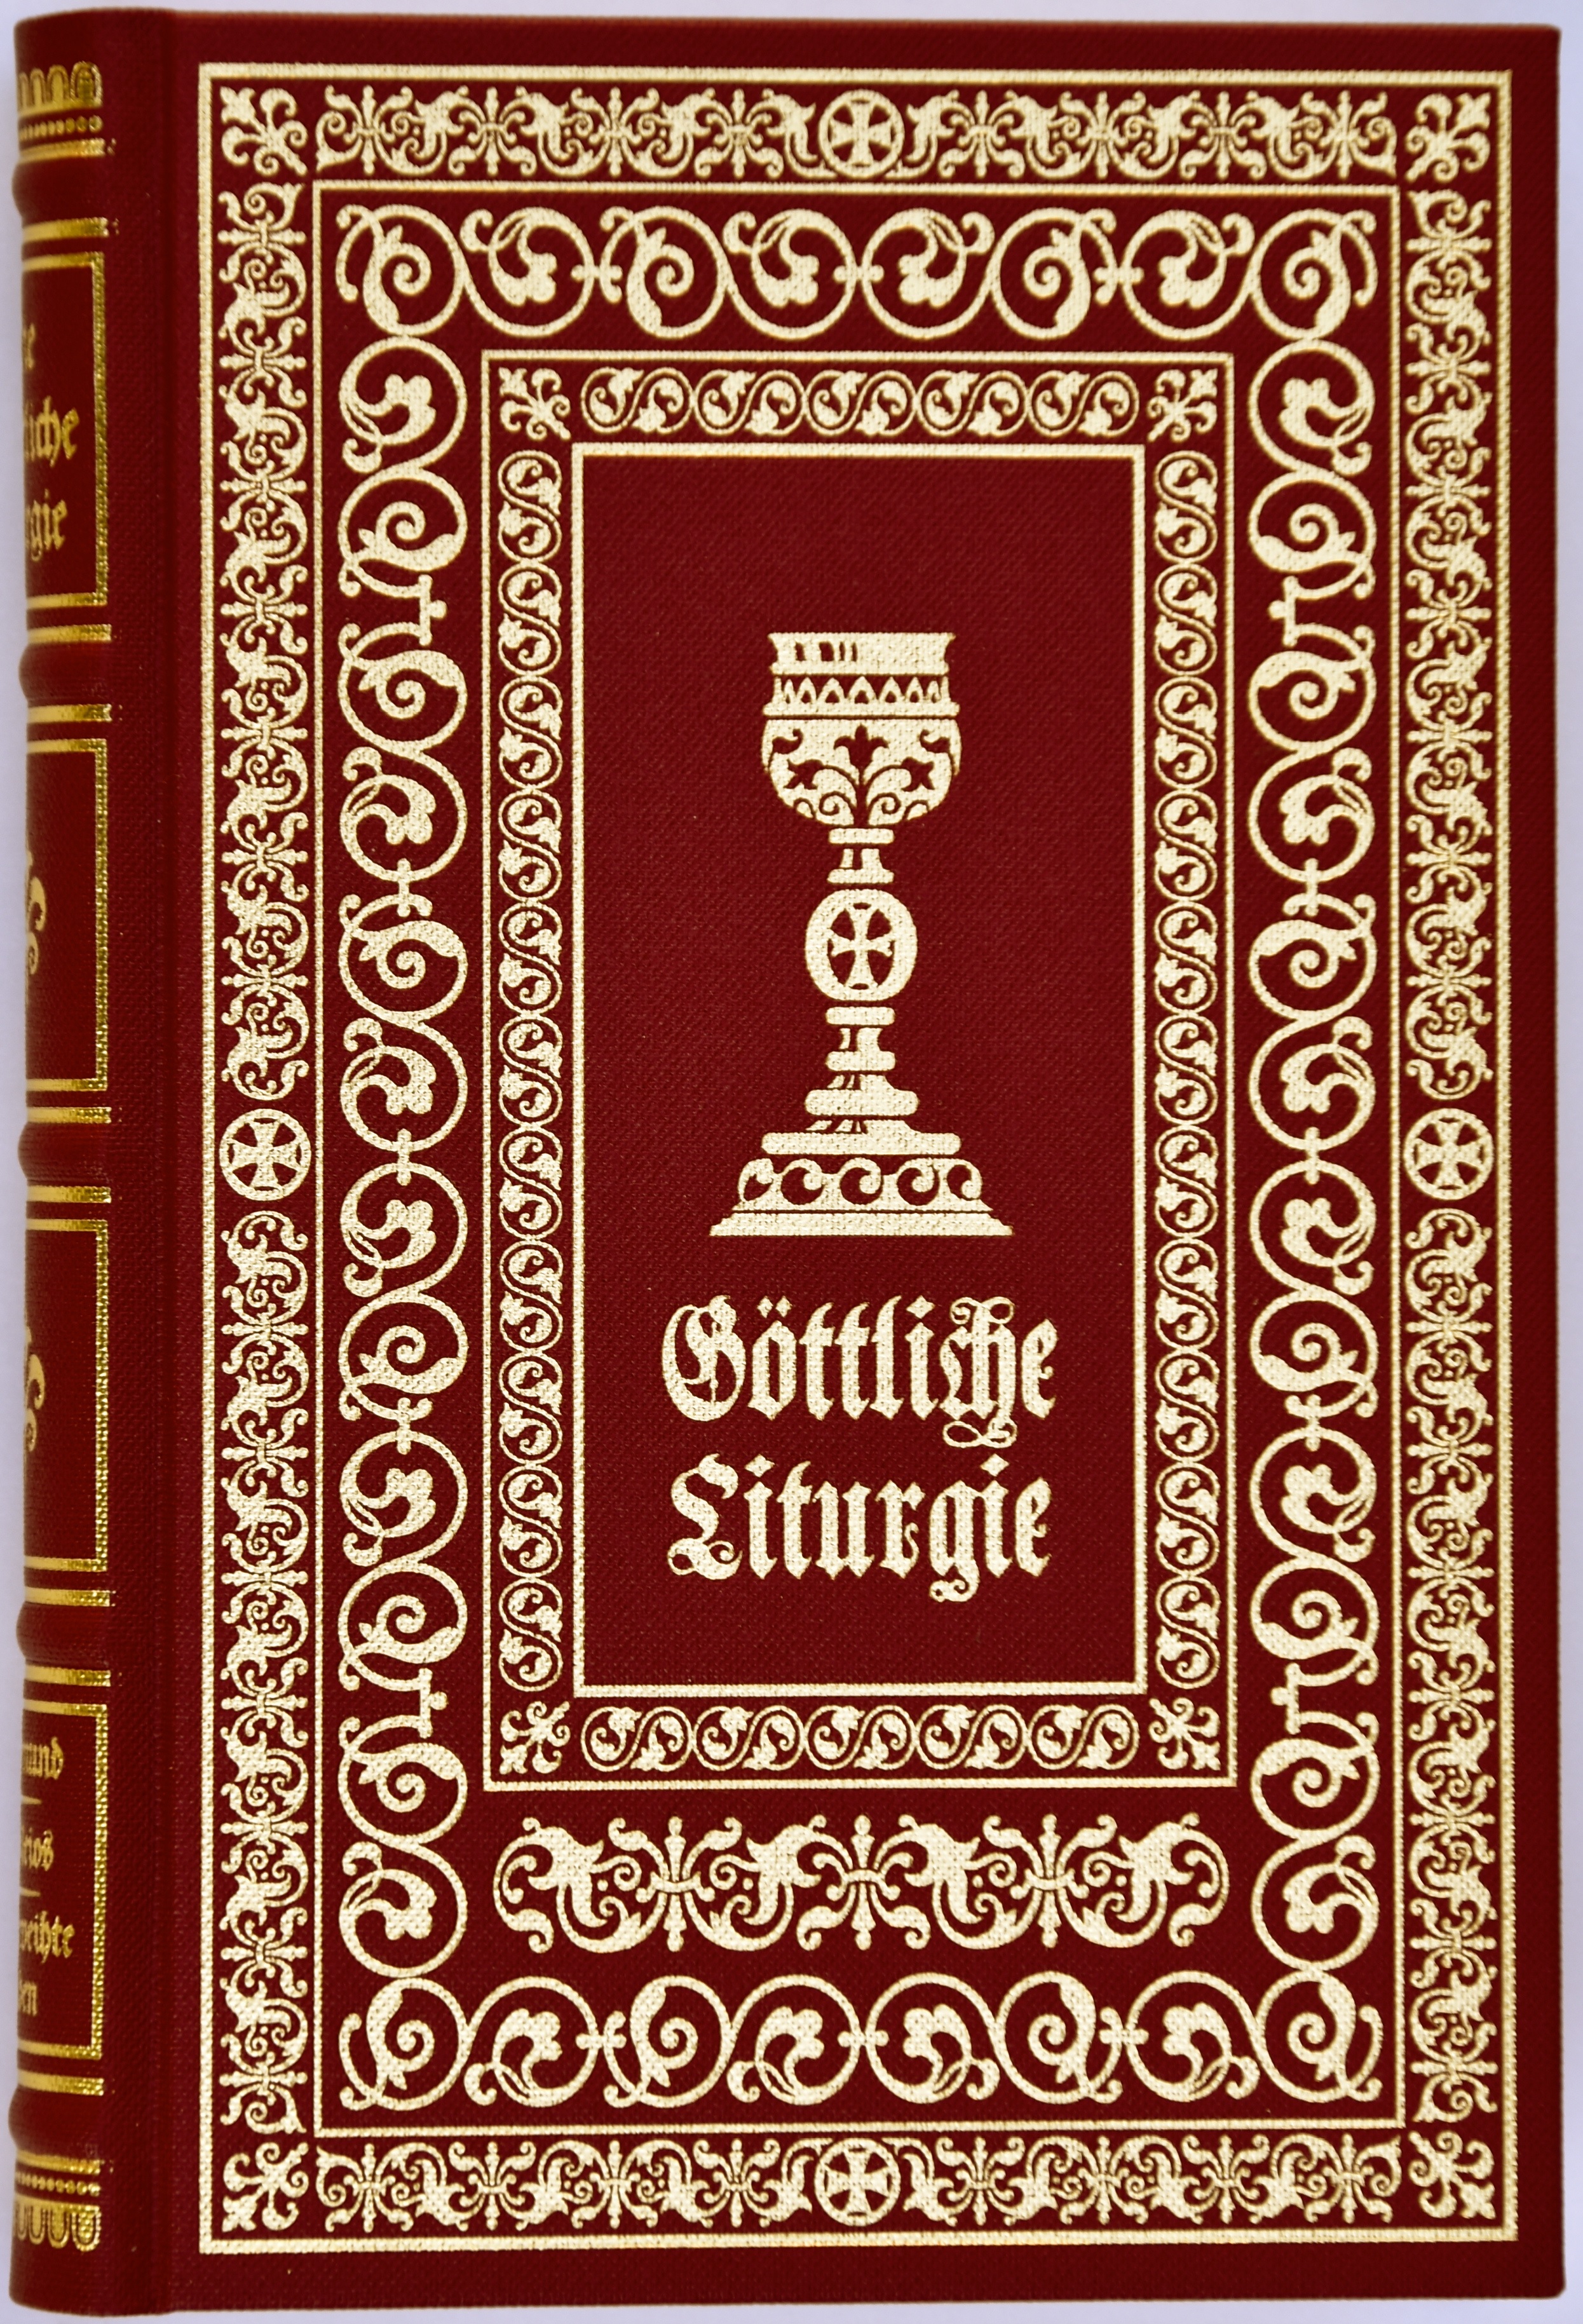 Die Göttliche Lithurgie - Ausgabe in Bibliotheksleinen